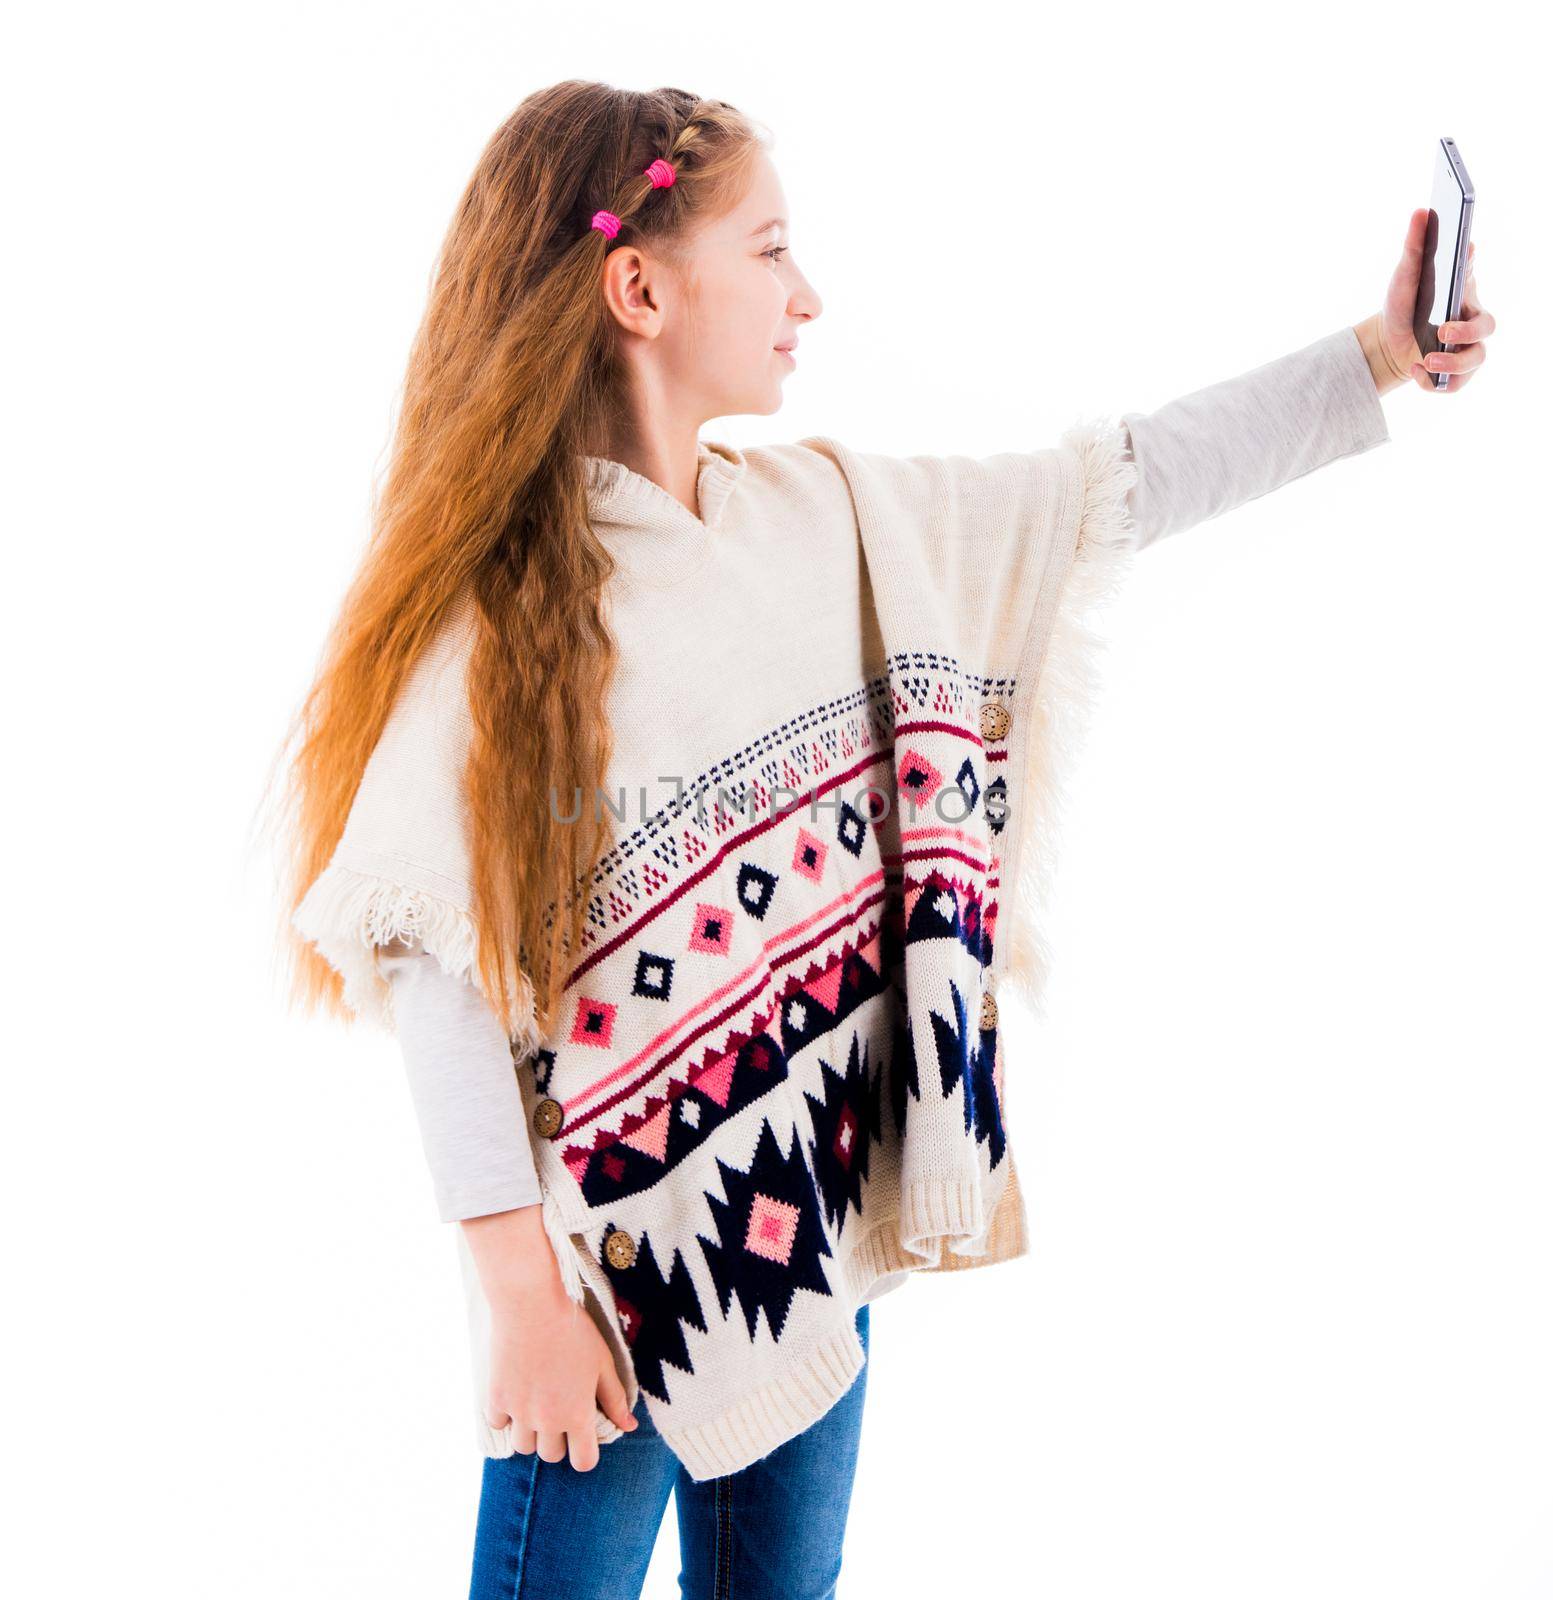 Teenage girl making a selfie by GekaSkr